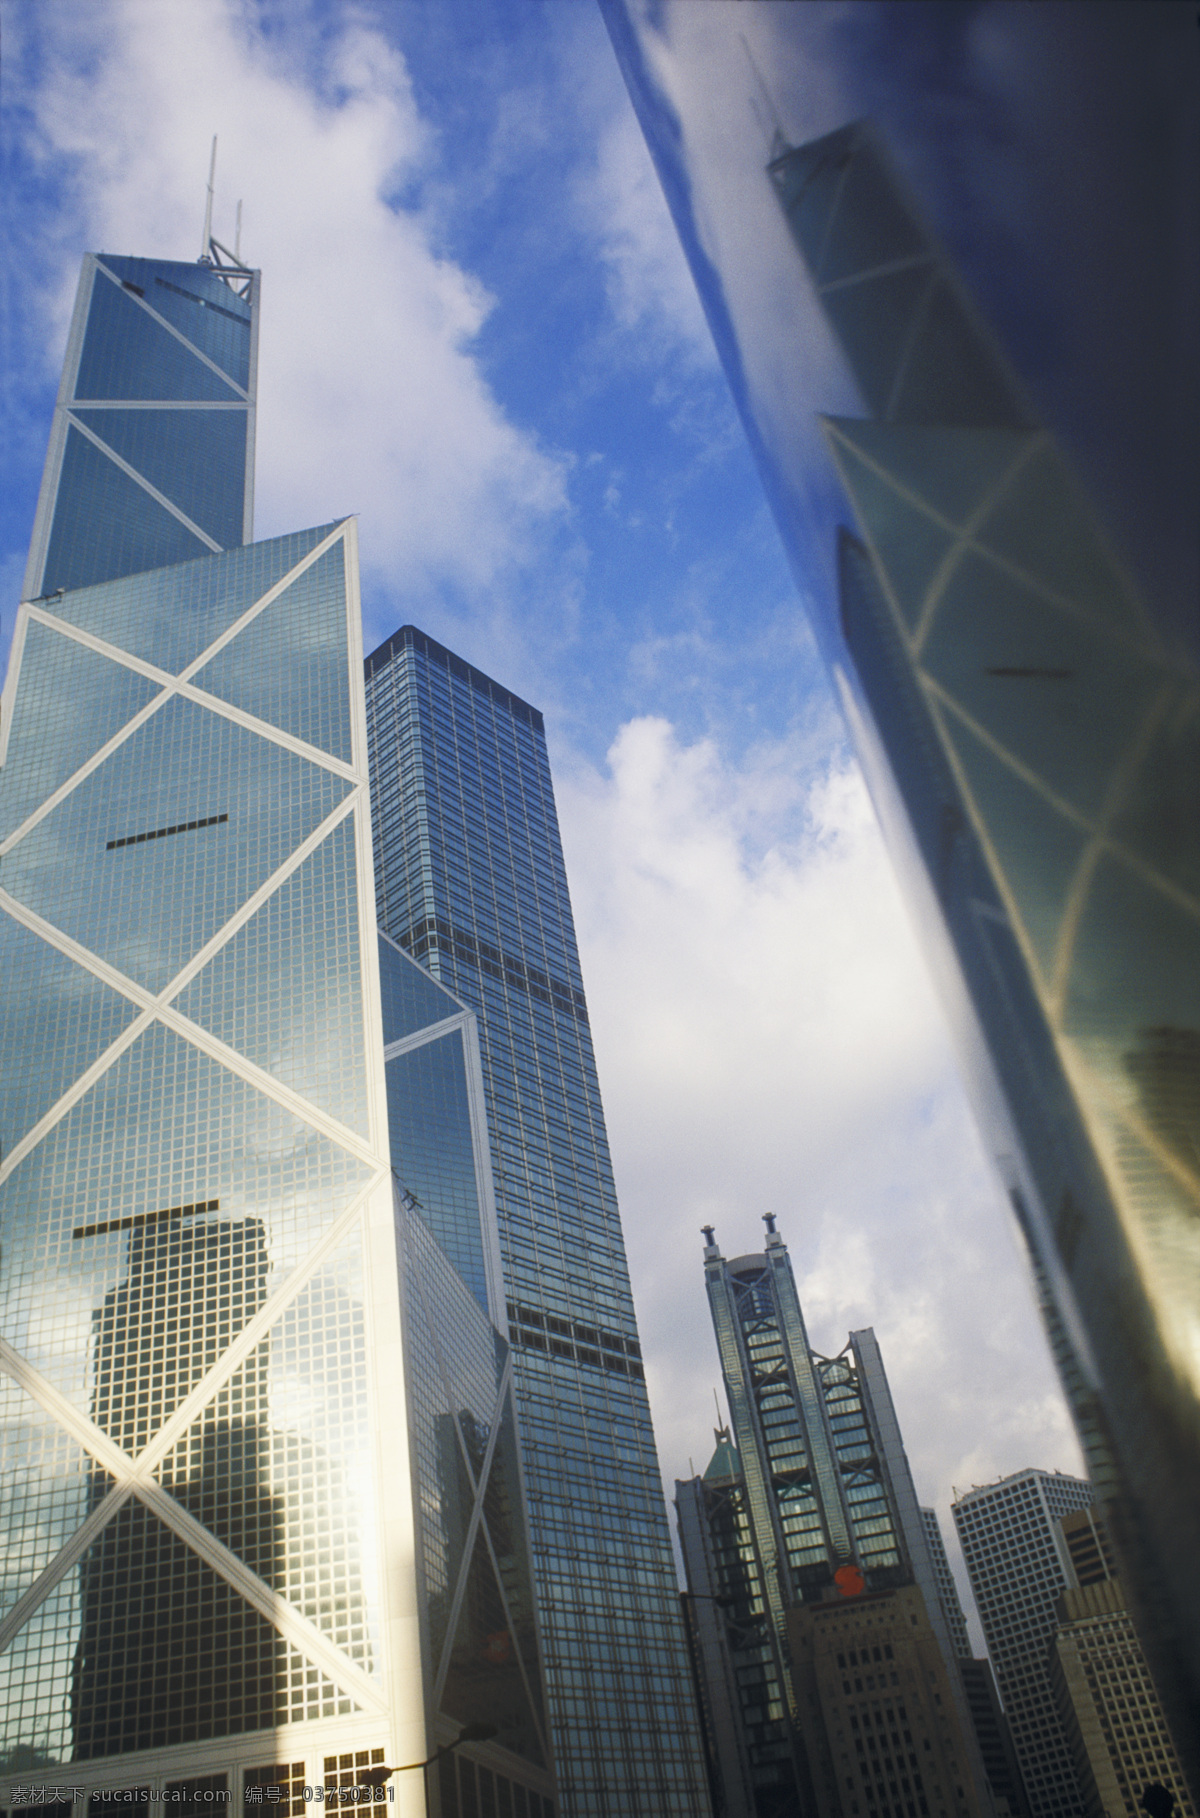 香港 中银大厦 城市风光 高楼大厦 建筑 风景 繁华 繁荣 标志建筑 蓝天白云 仰视 摄影图 高清图片 环境家居